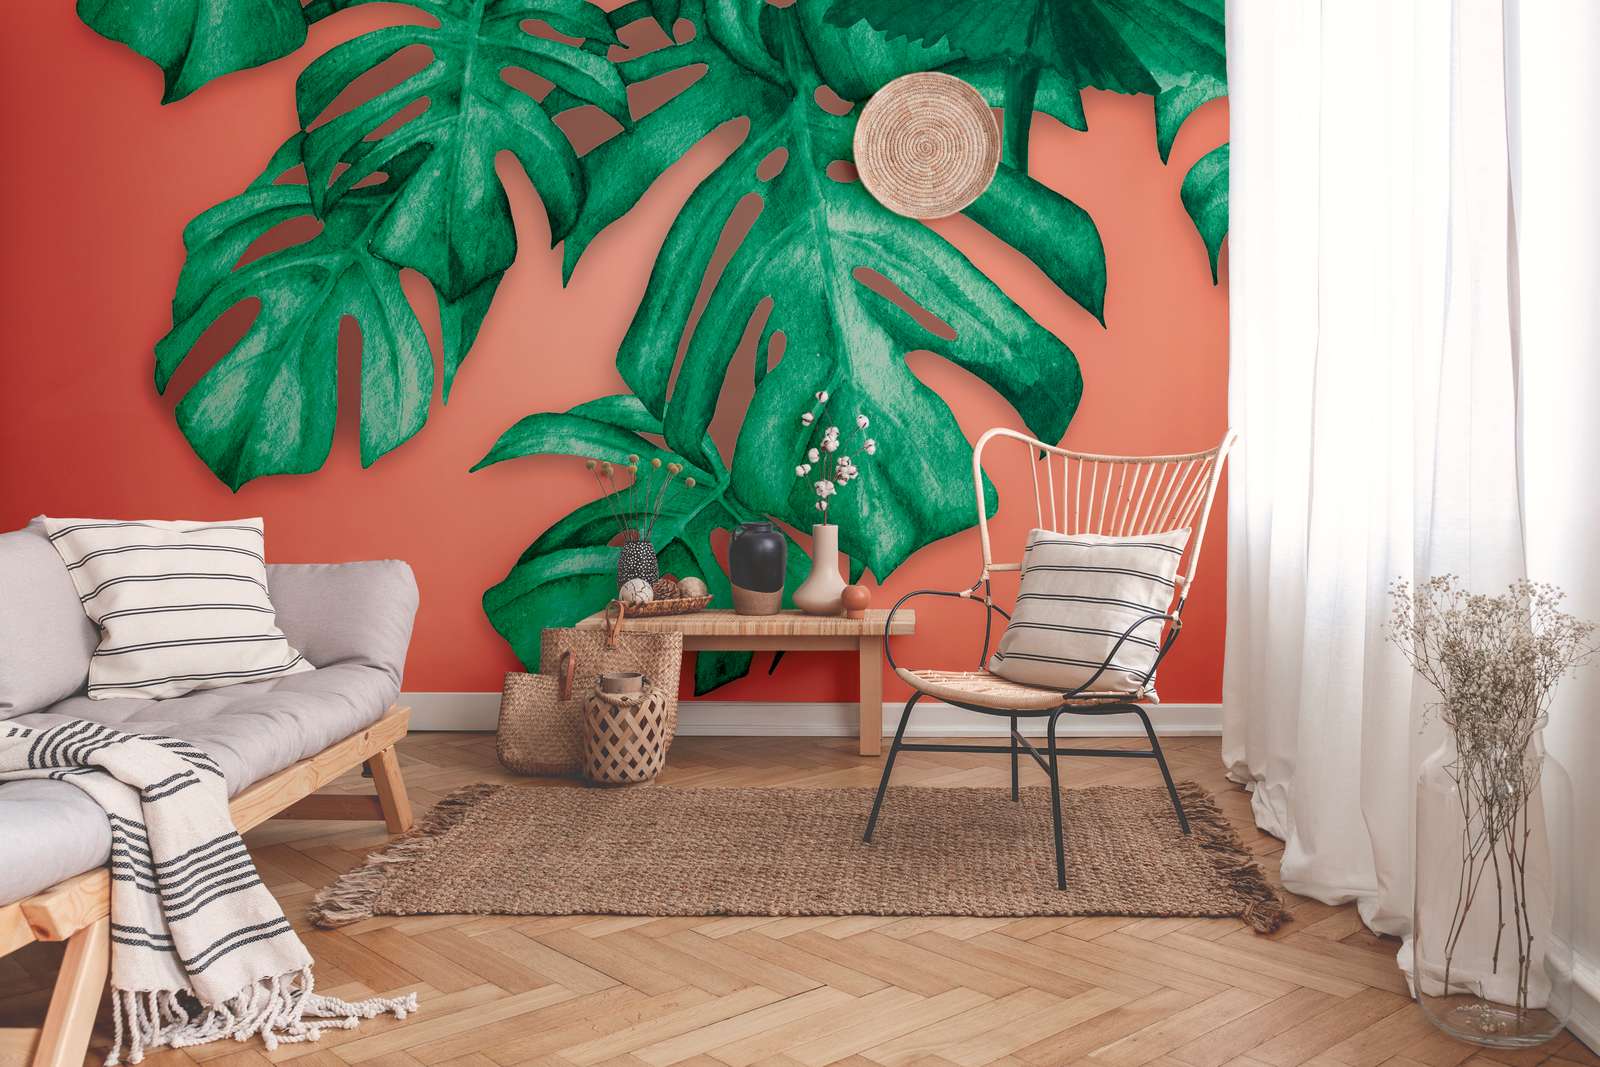             Papier peint avec des feuilles de palmier tropicales - vert, orange
        